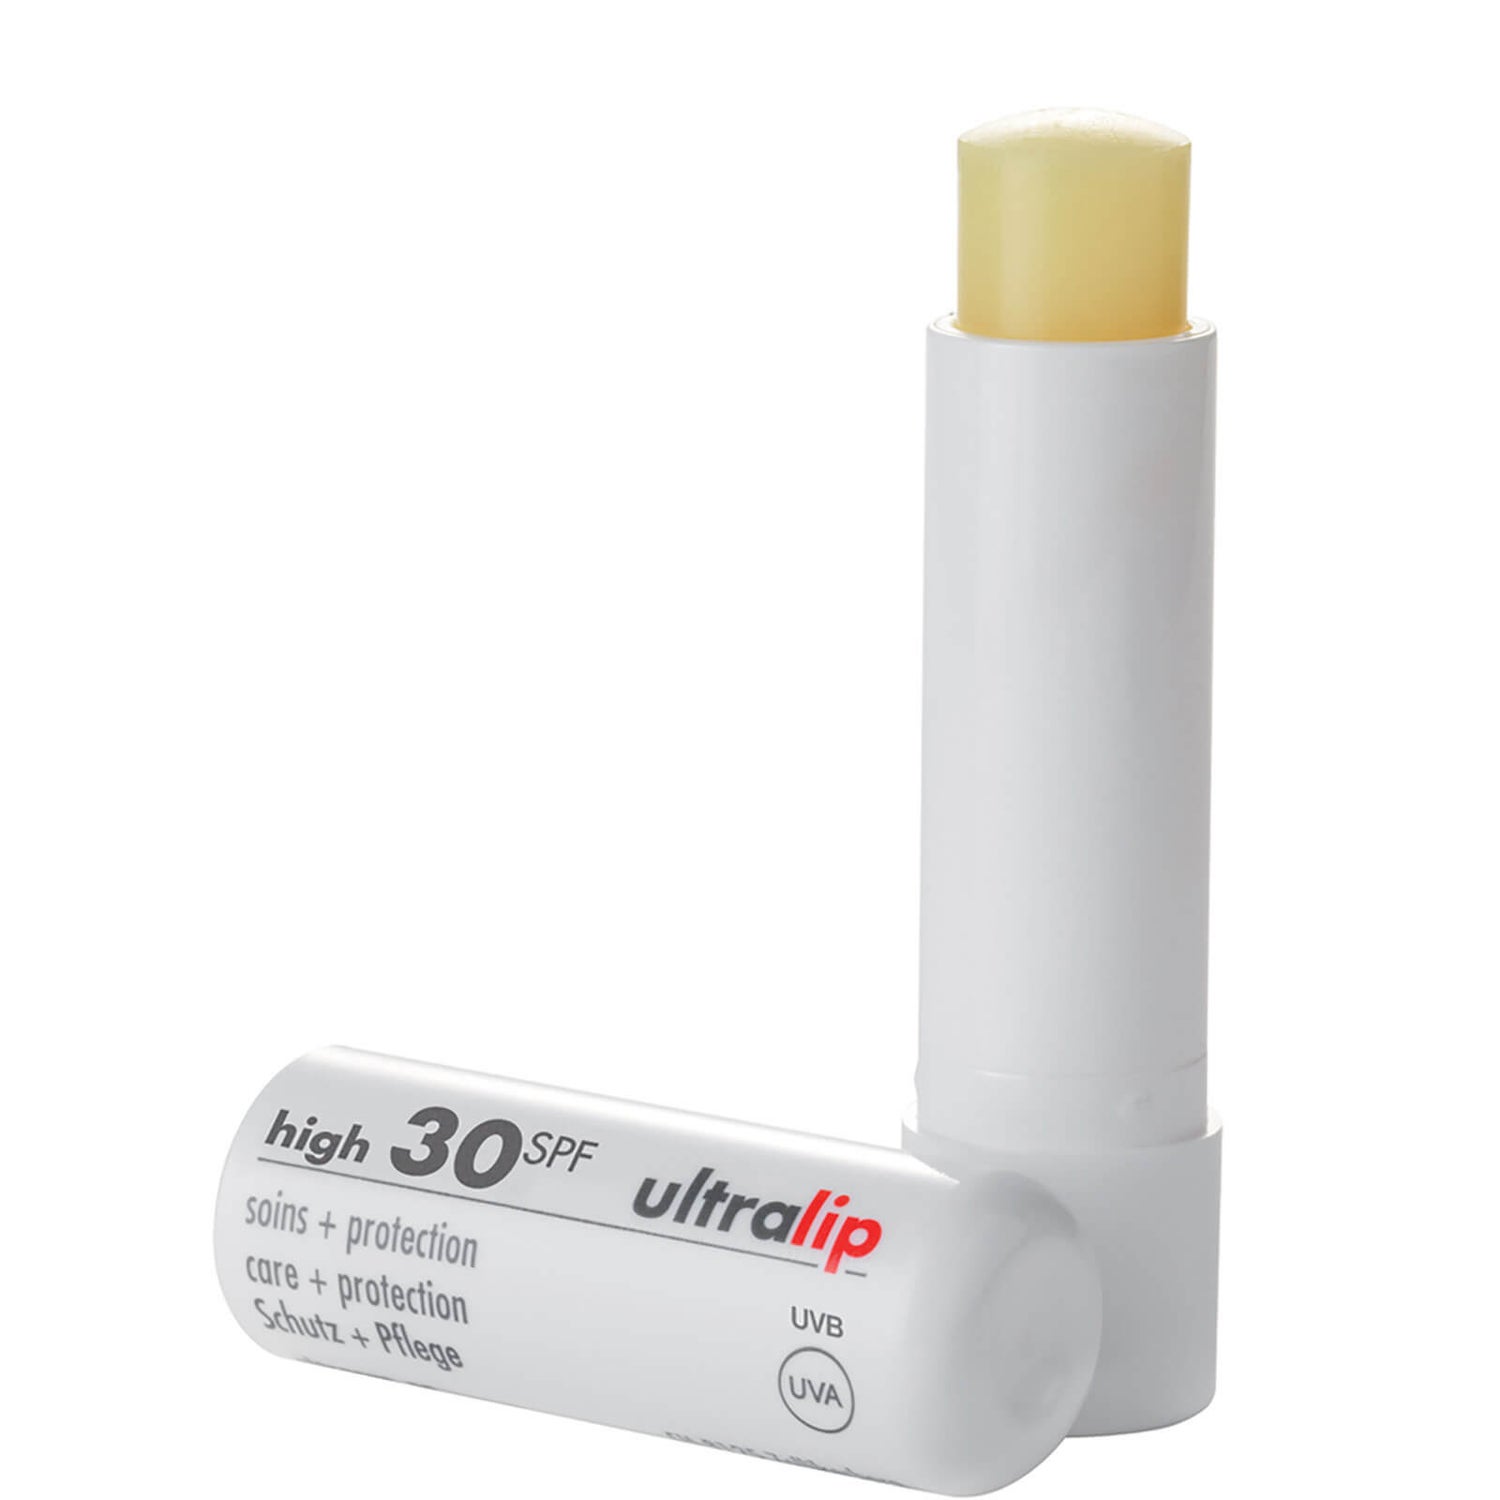 Ultrasun Lip Protection SPF 30